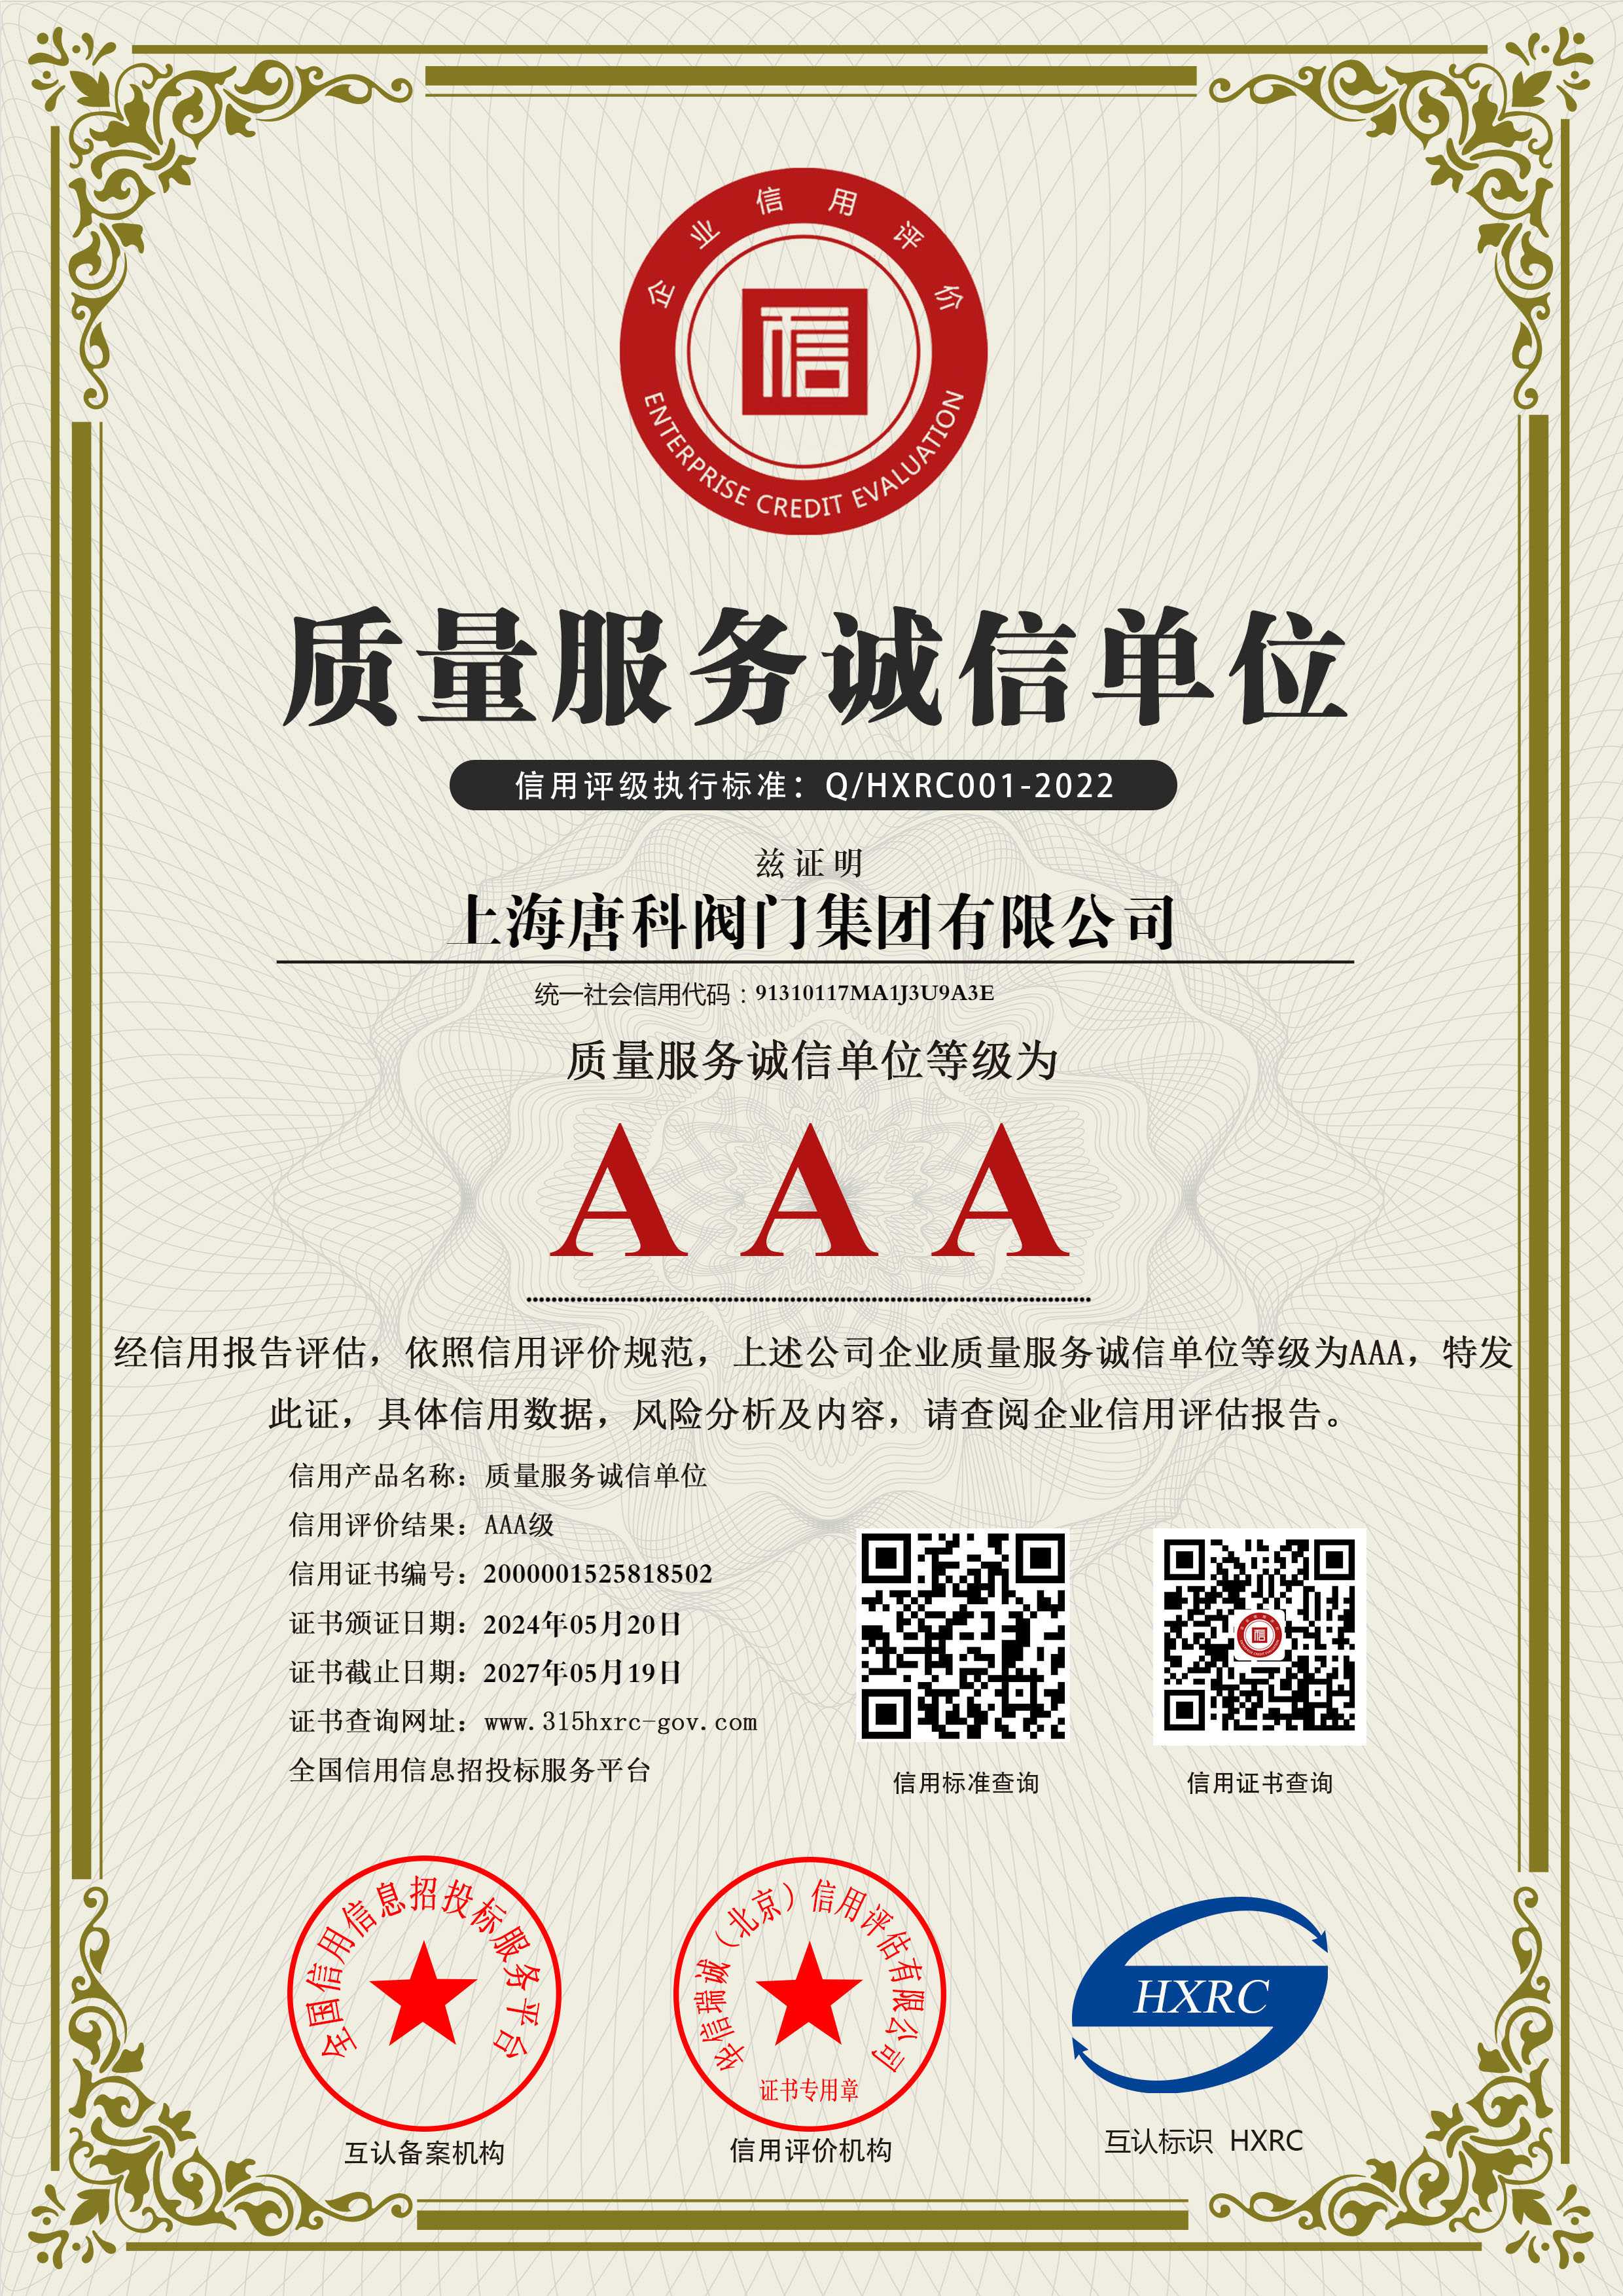 8 上海唐科閥門集團有限公司-AAA級質量服務誠信單位-新版